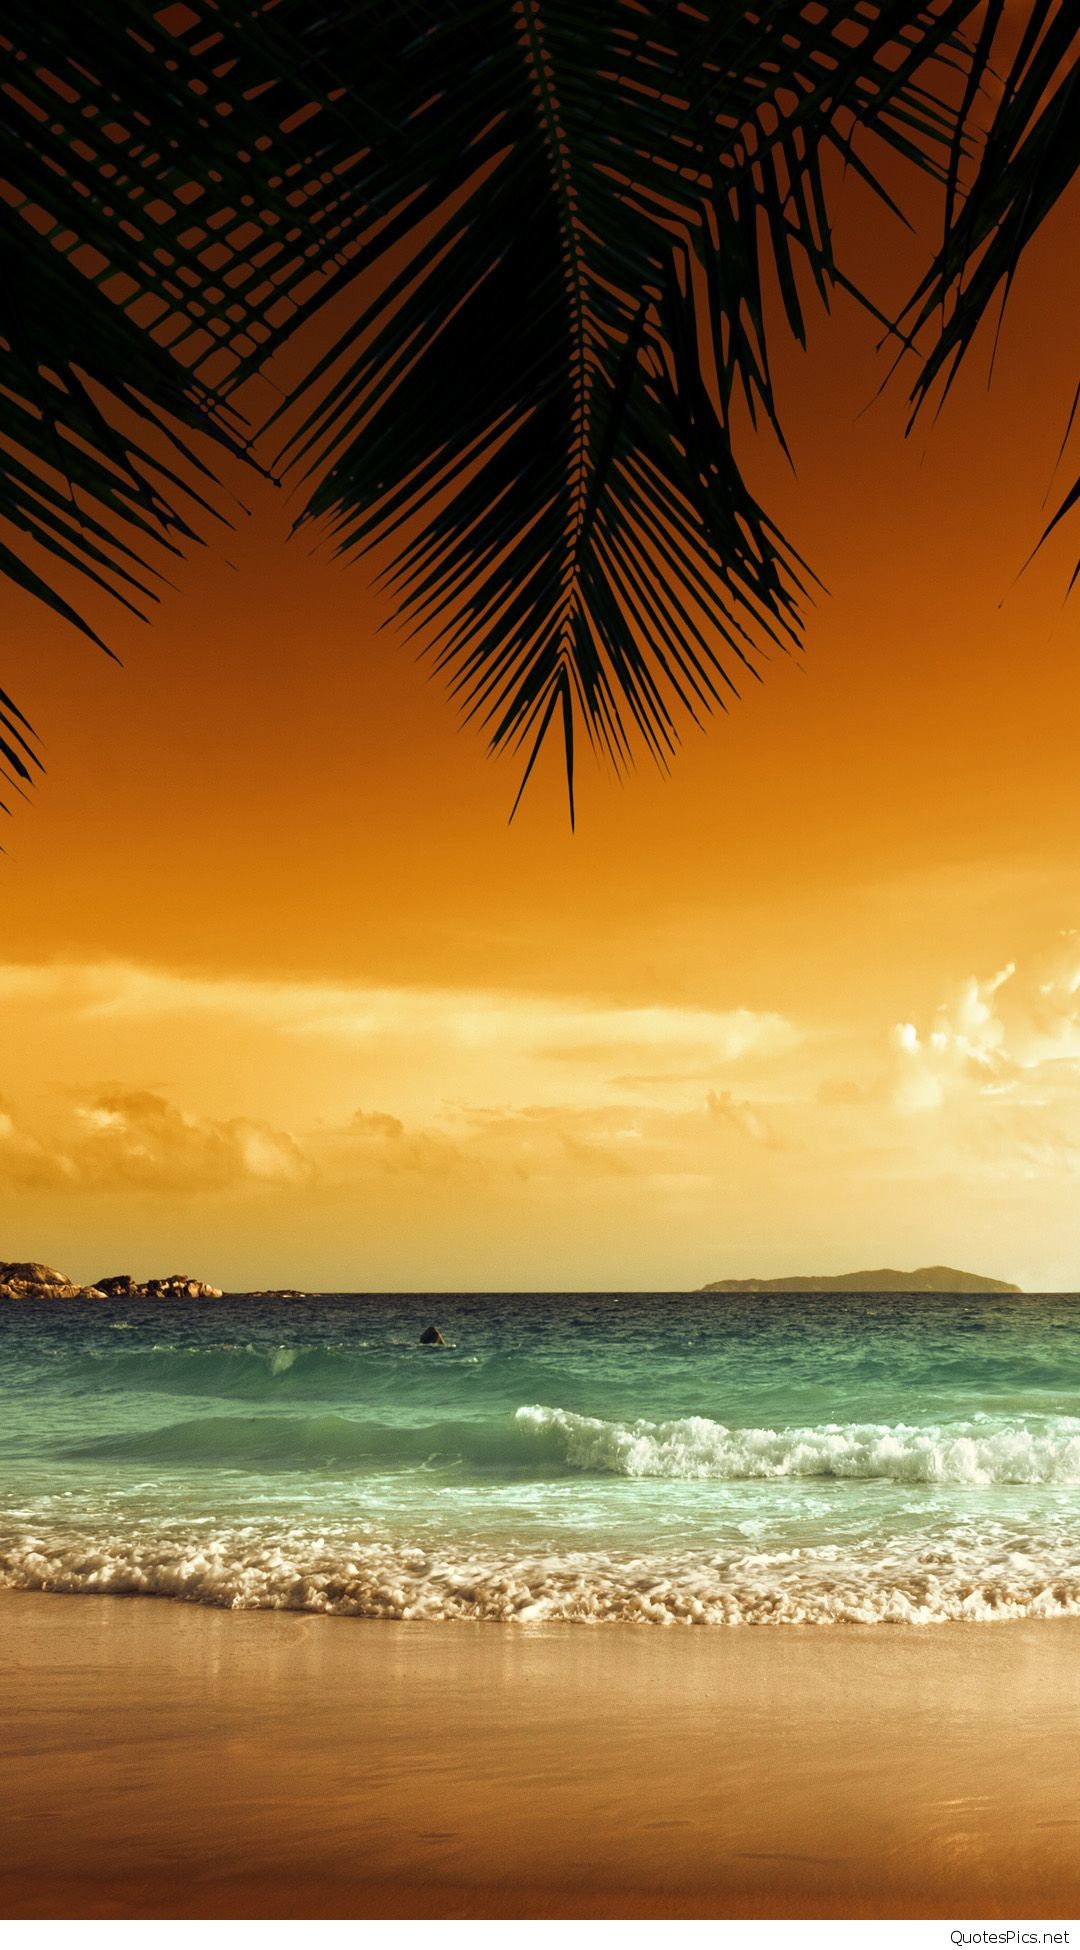 1080x1950 Sunset Beach iphone 6 plus wallpaper Â·  ws_Red_Cloud_Sunset_Ocean_Beach_640x1136